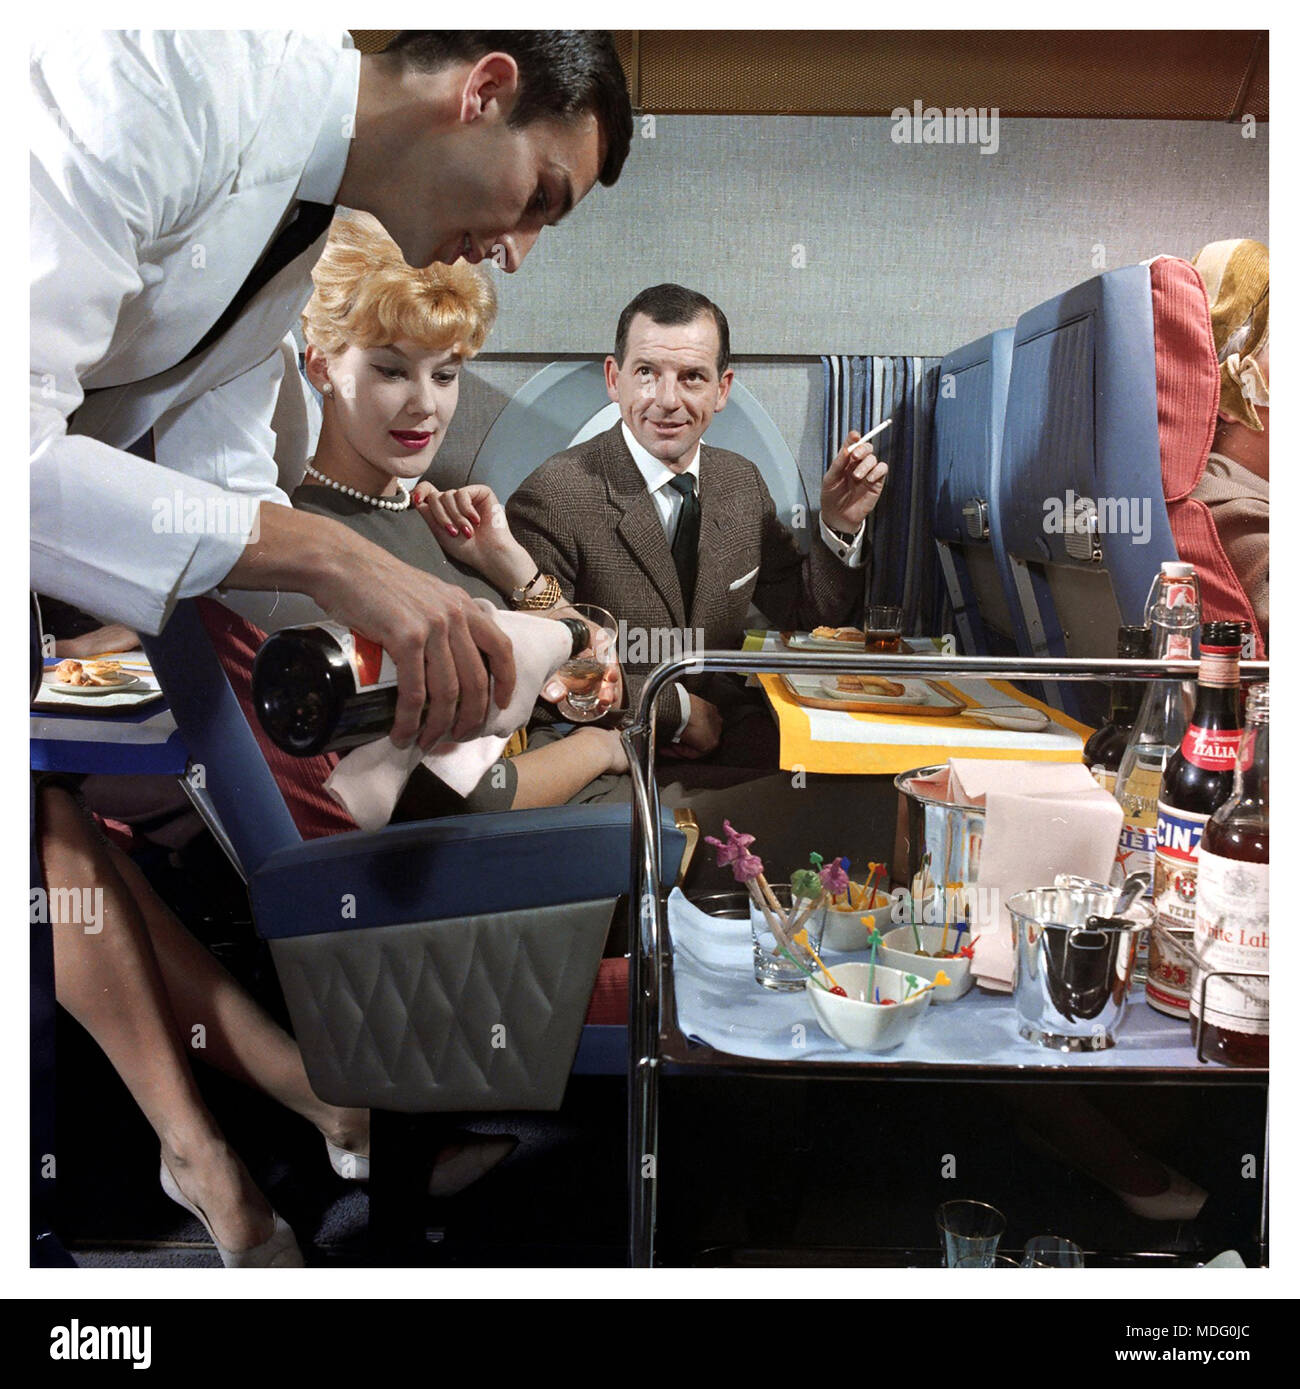 1950s cabine d'avion de première classe de service d'avion de steward servant les passagers de première classe dans les années 1950-1960 Voyage aérien de première classe l'ère d'or de l'aviation de passagers les passagers mâles fumeurs de cigarettes Banque D'Images